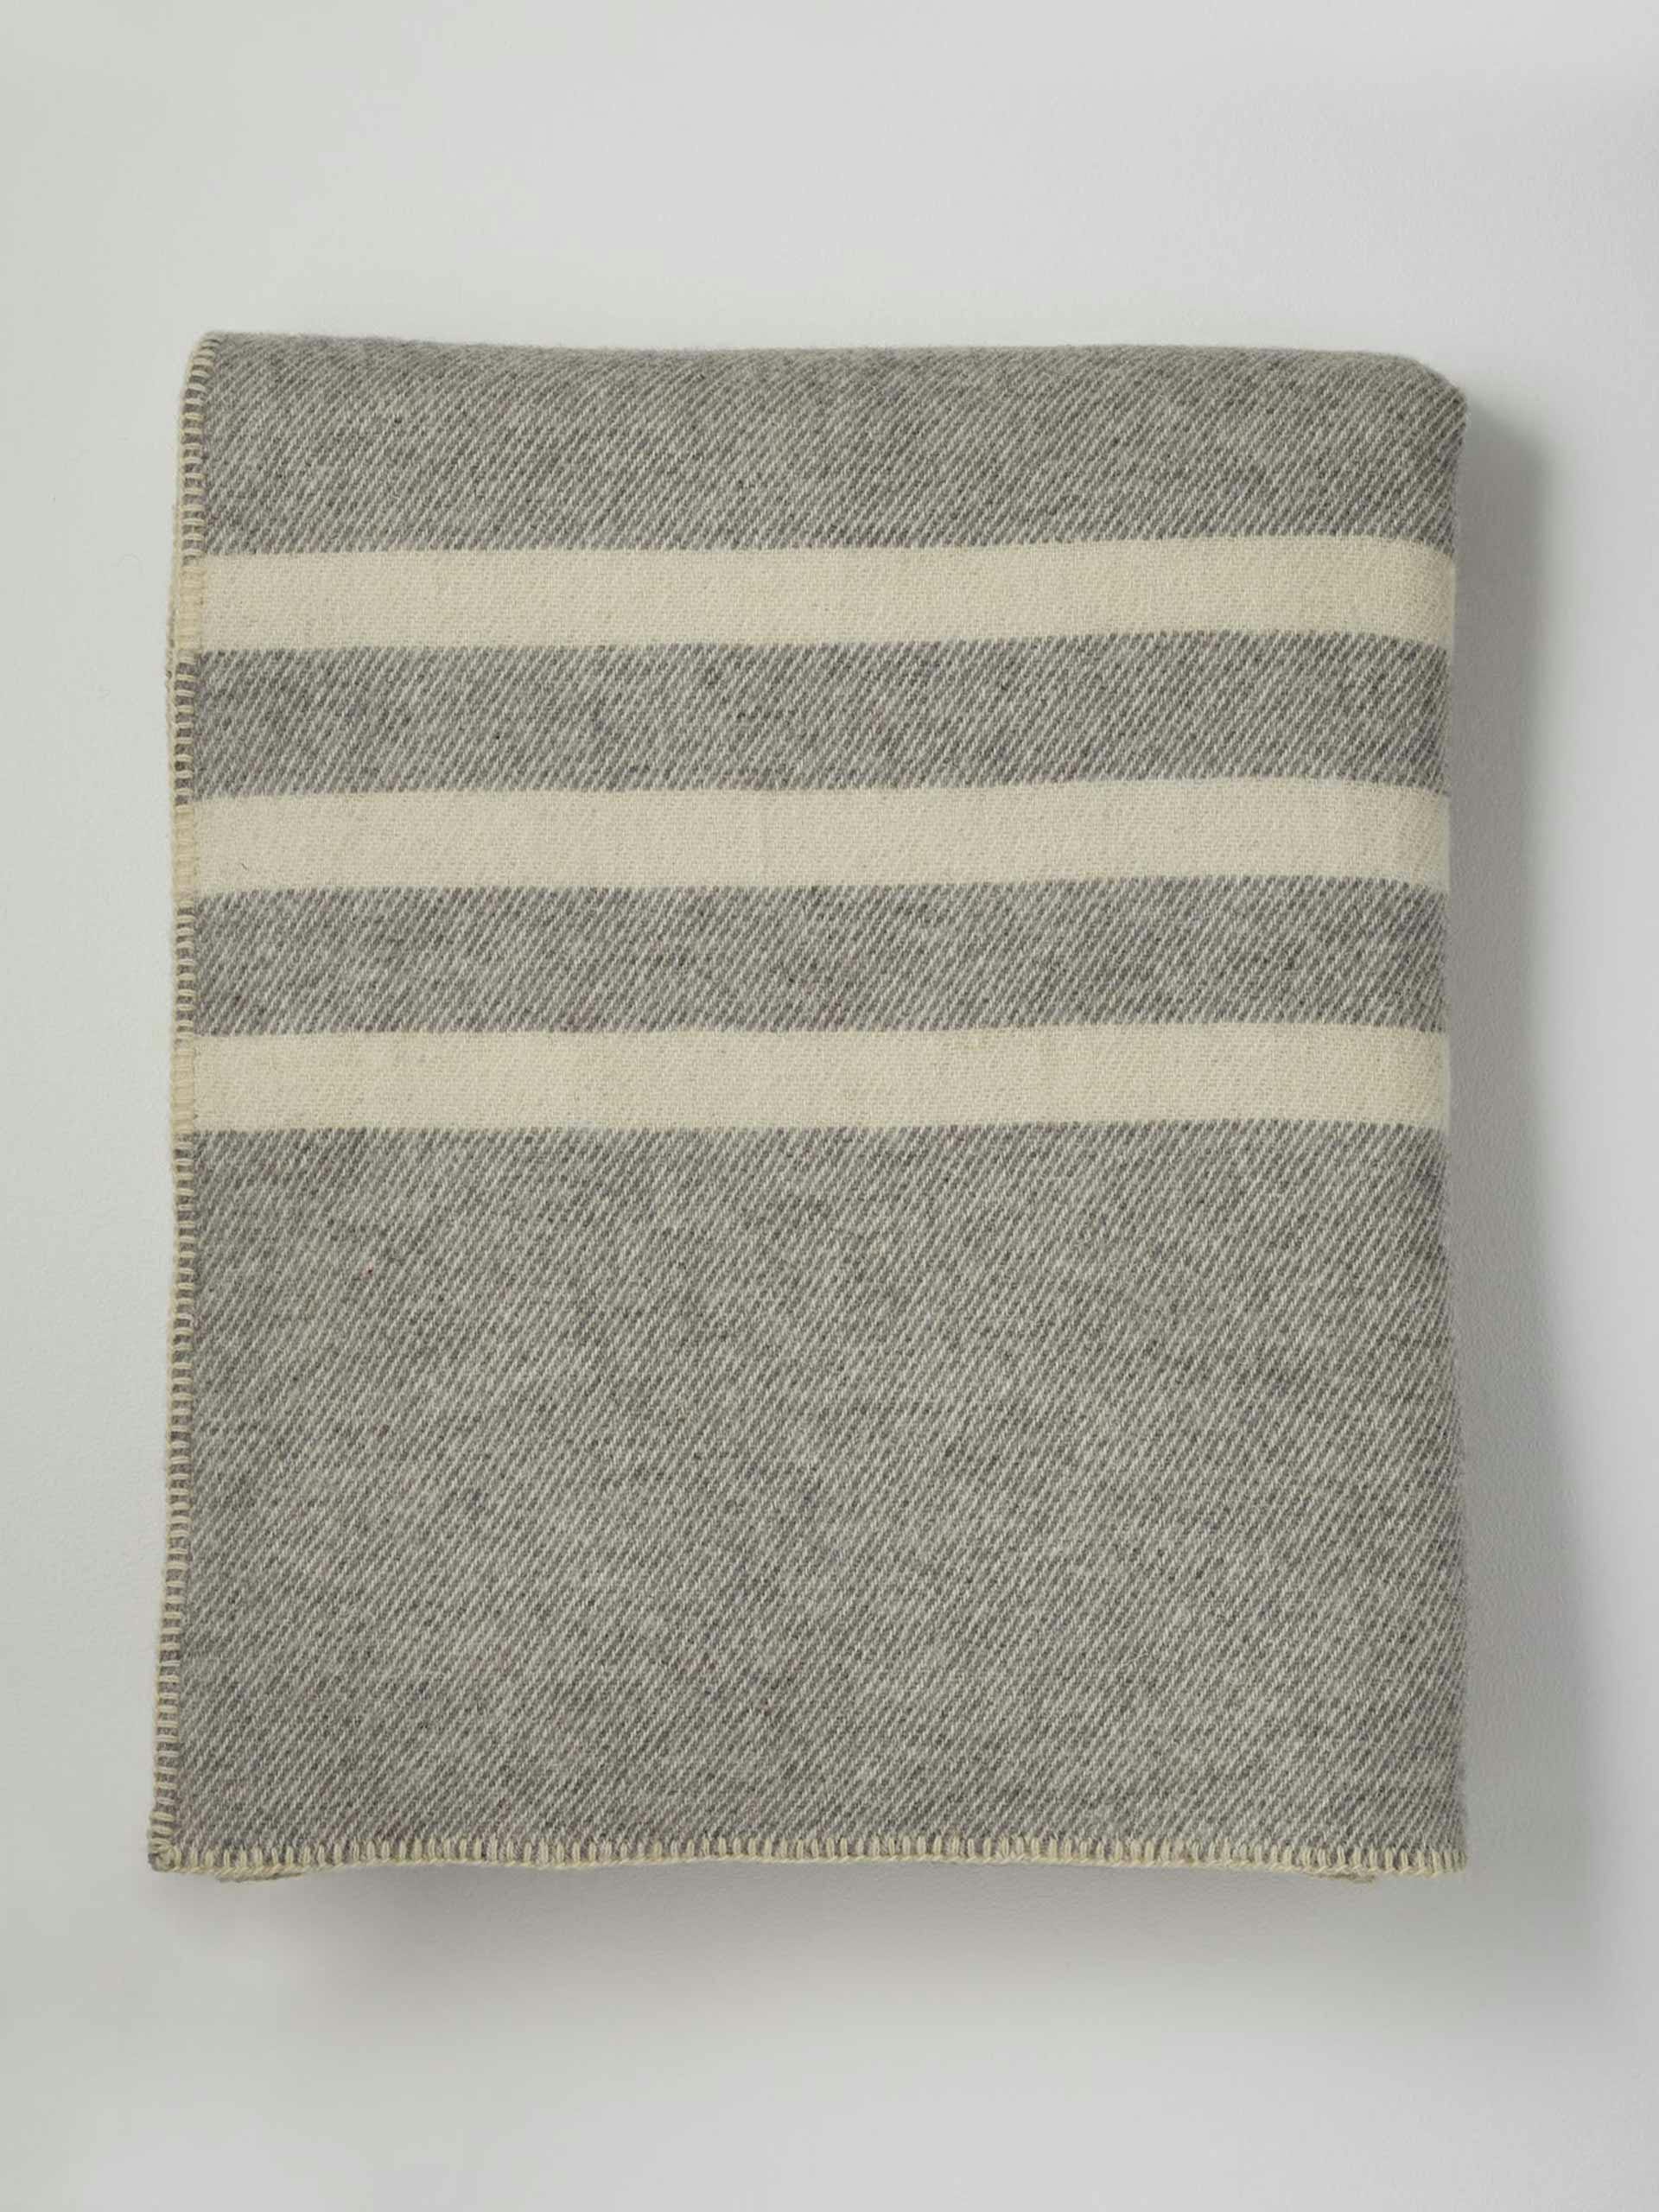 Canadian wool blanket